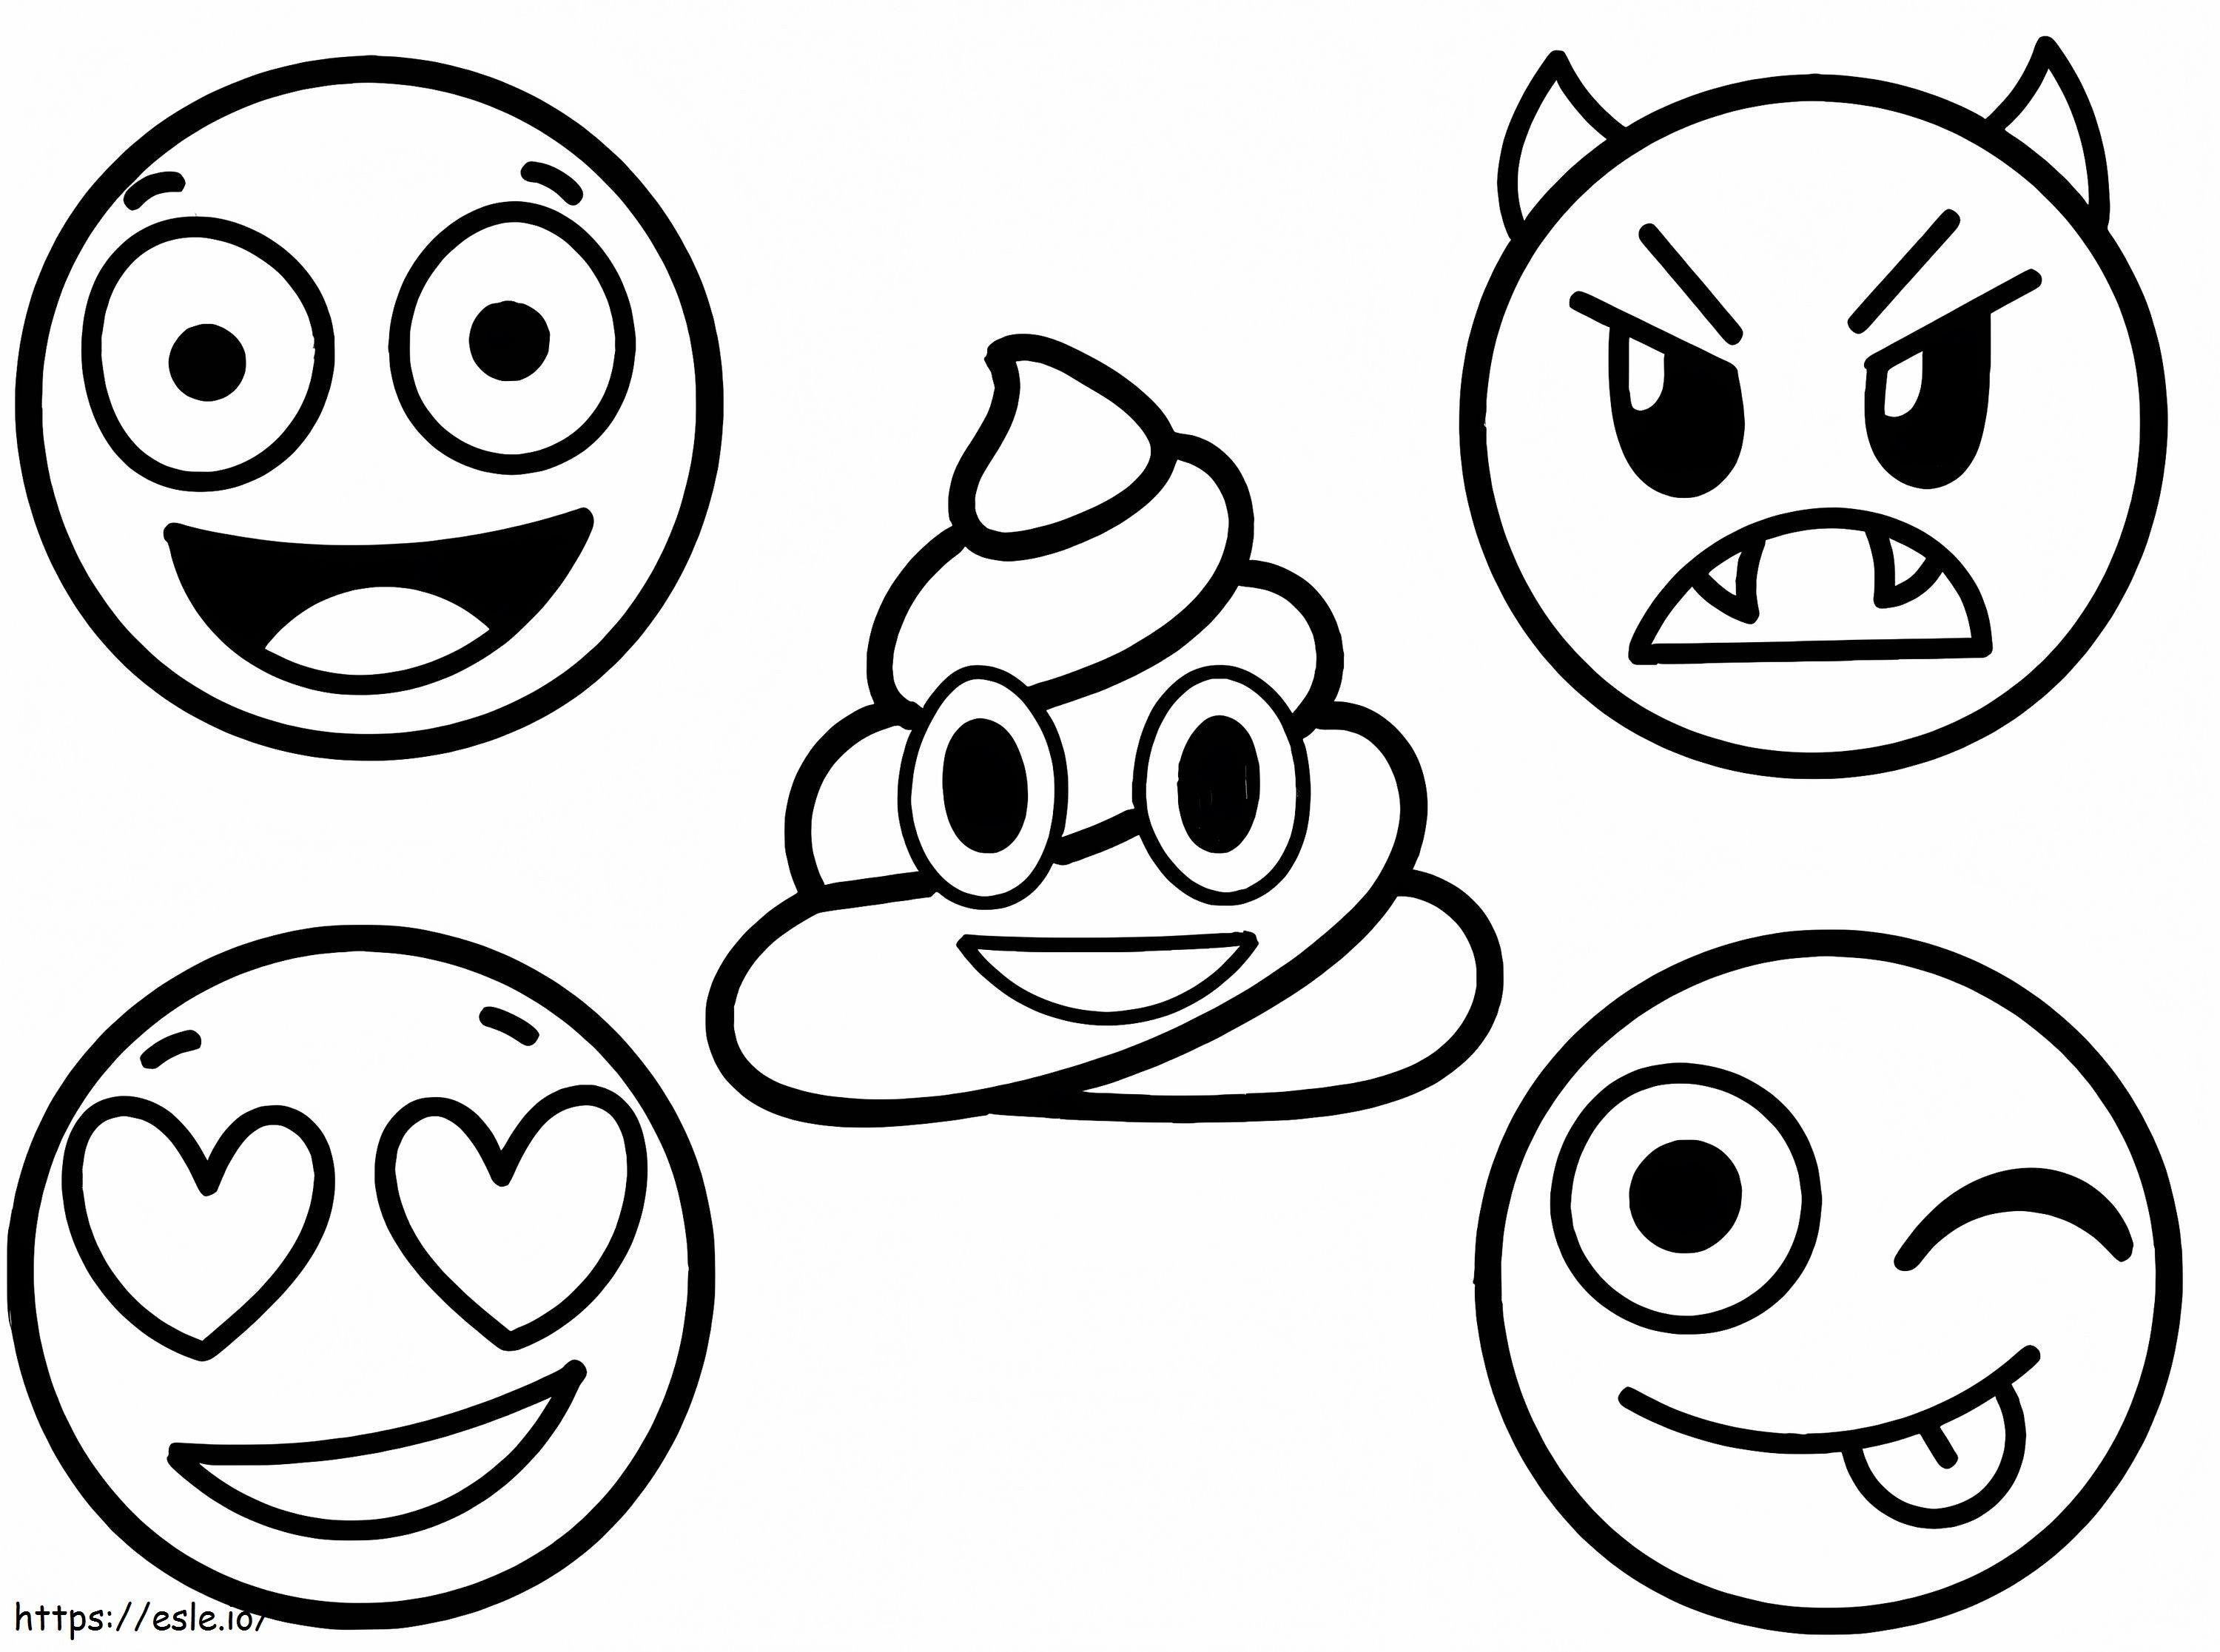 Beş Emoji boyama